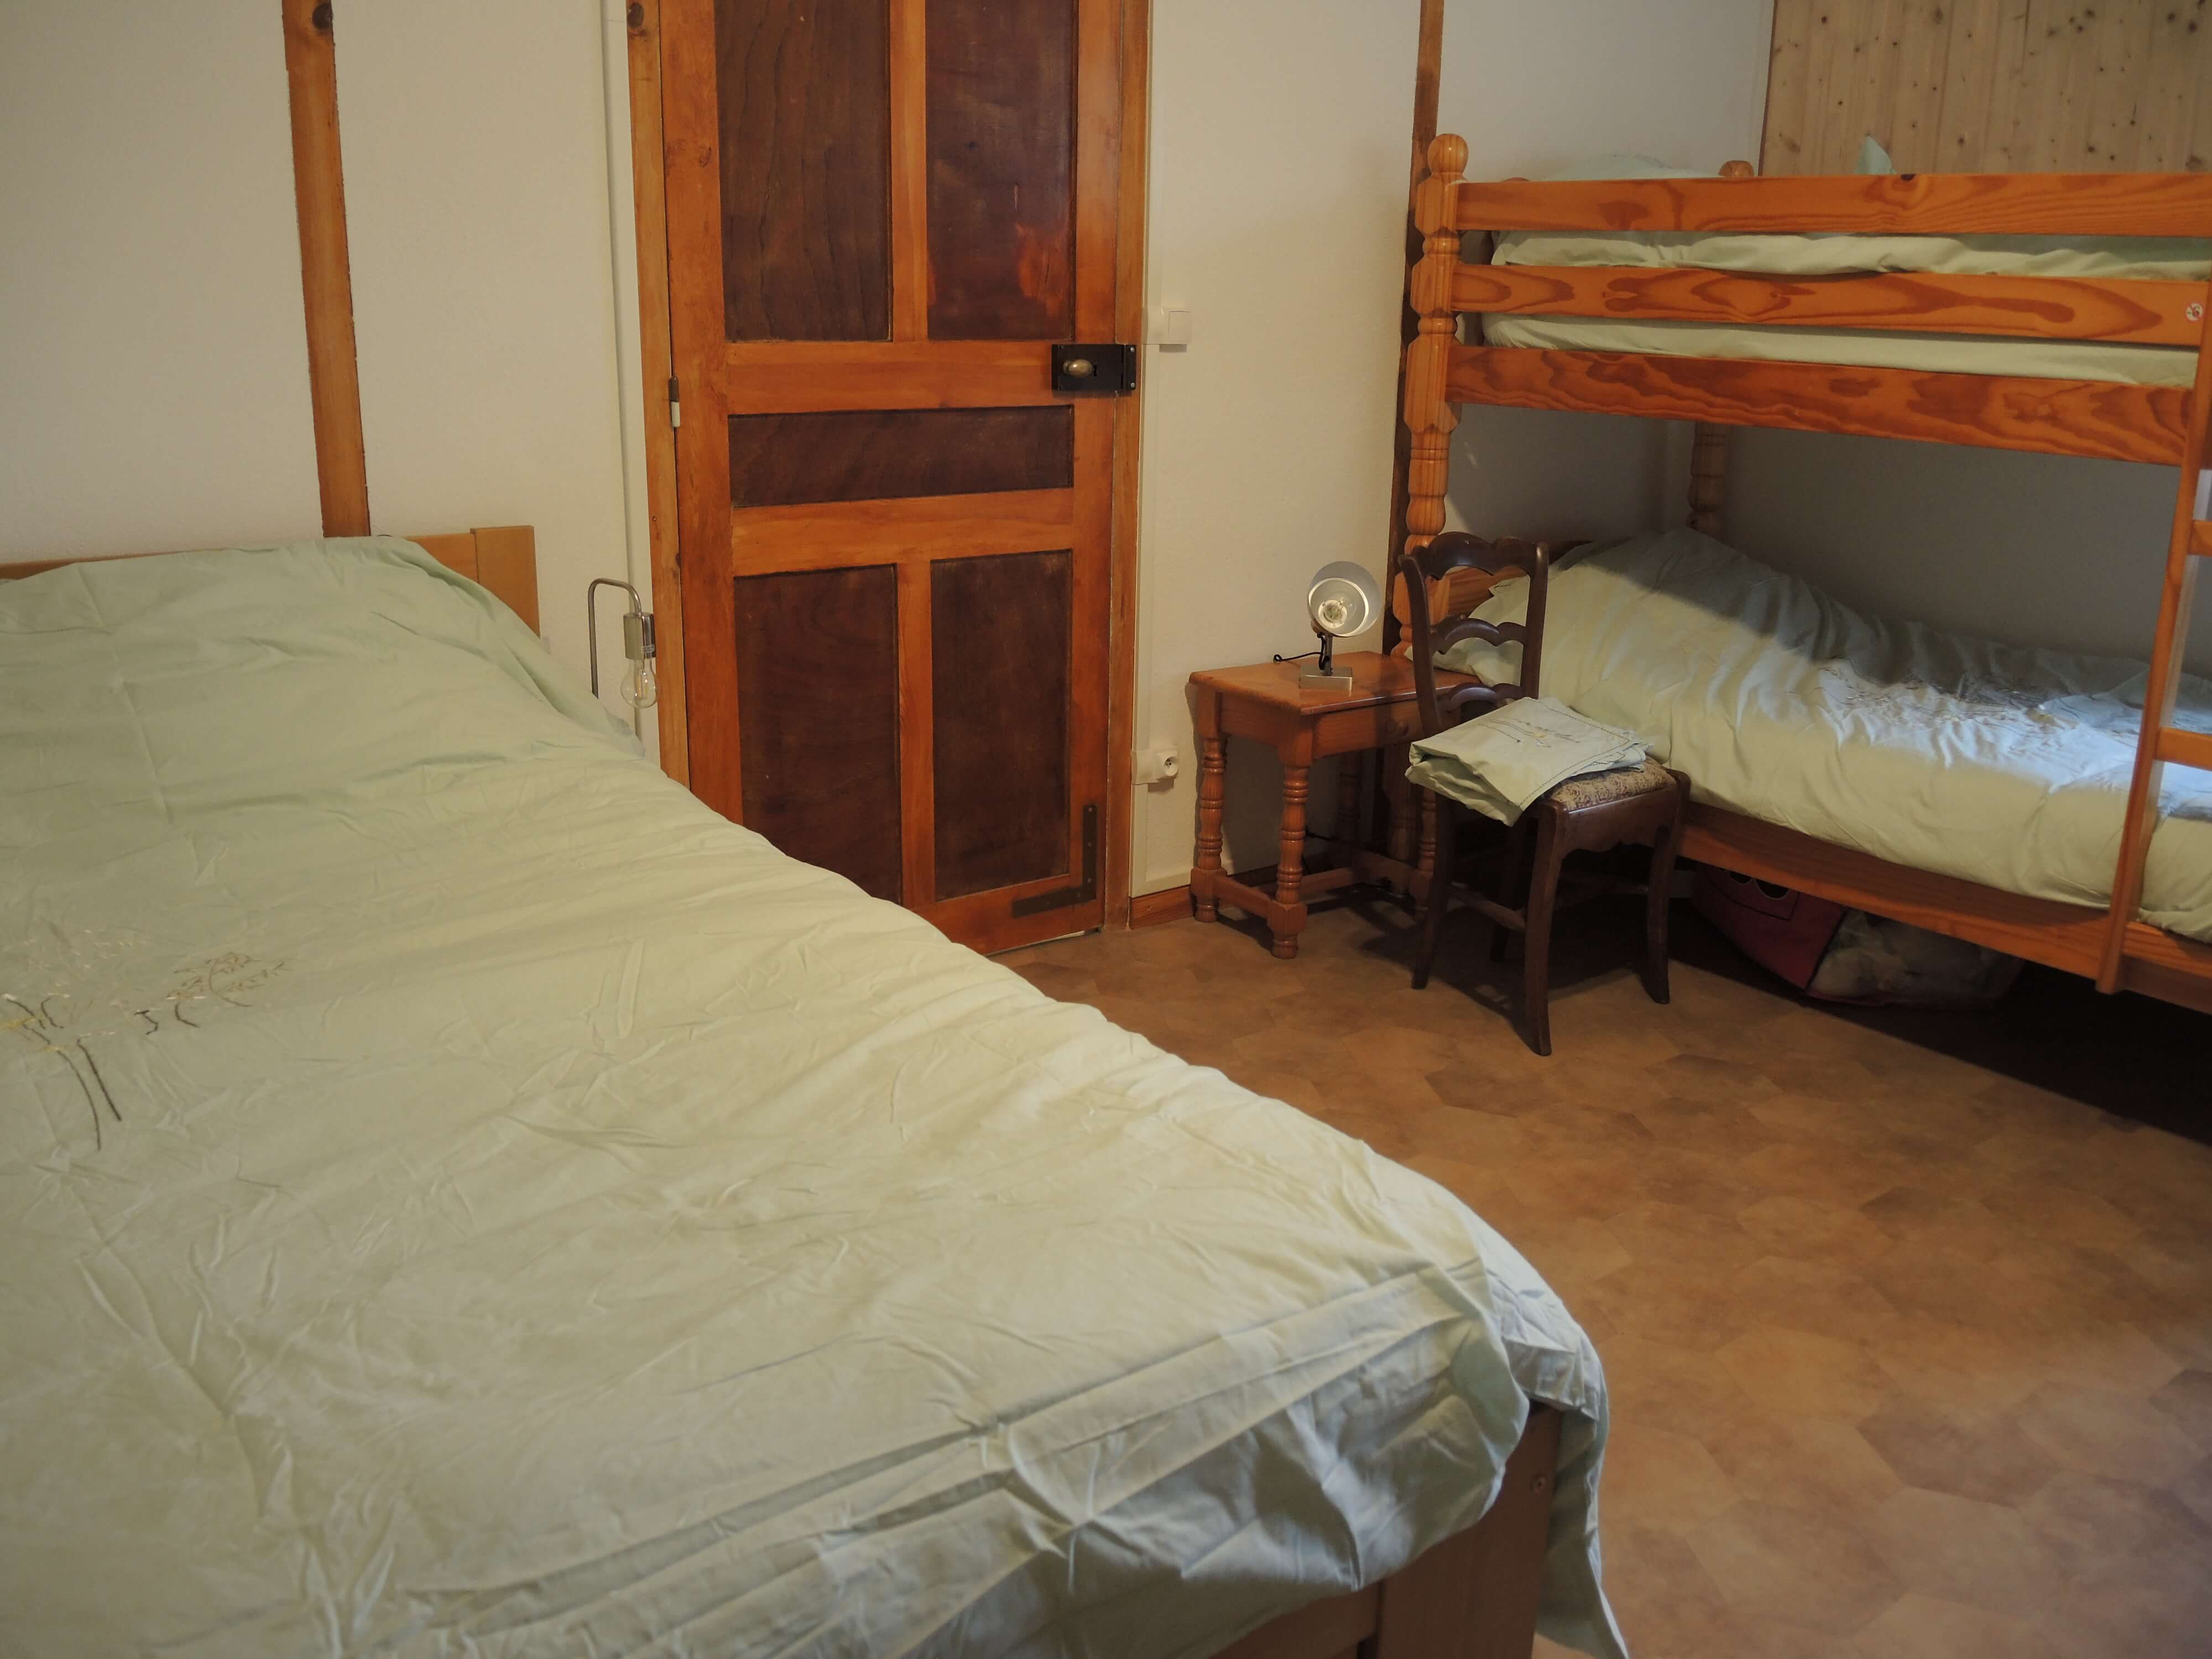 La troisième chambre contient un lit 2 places, ainsi qu'un double lit superposé.